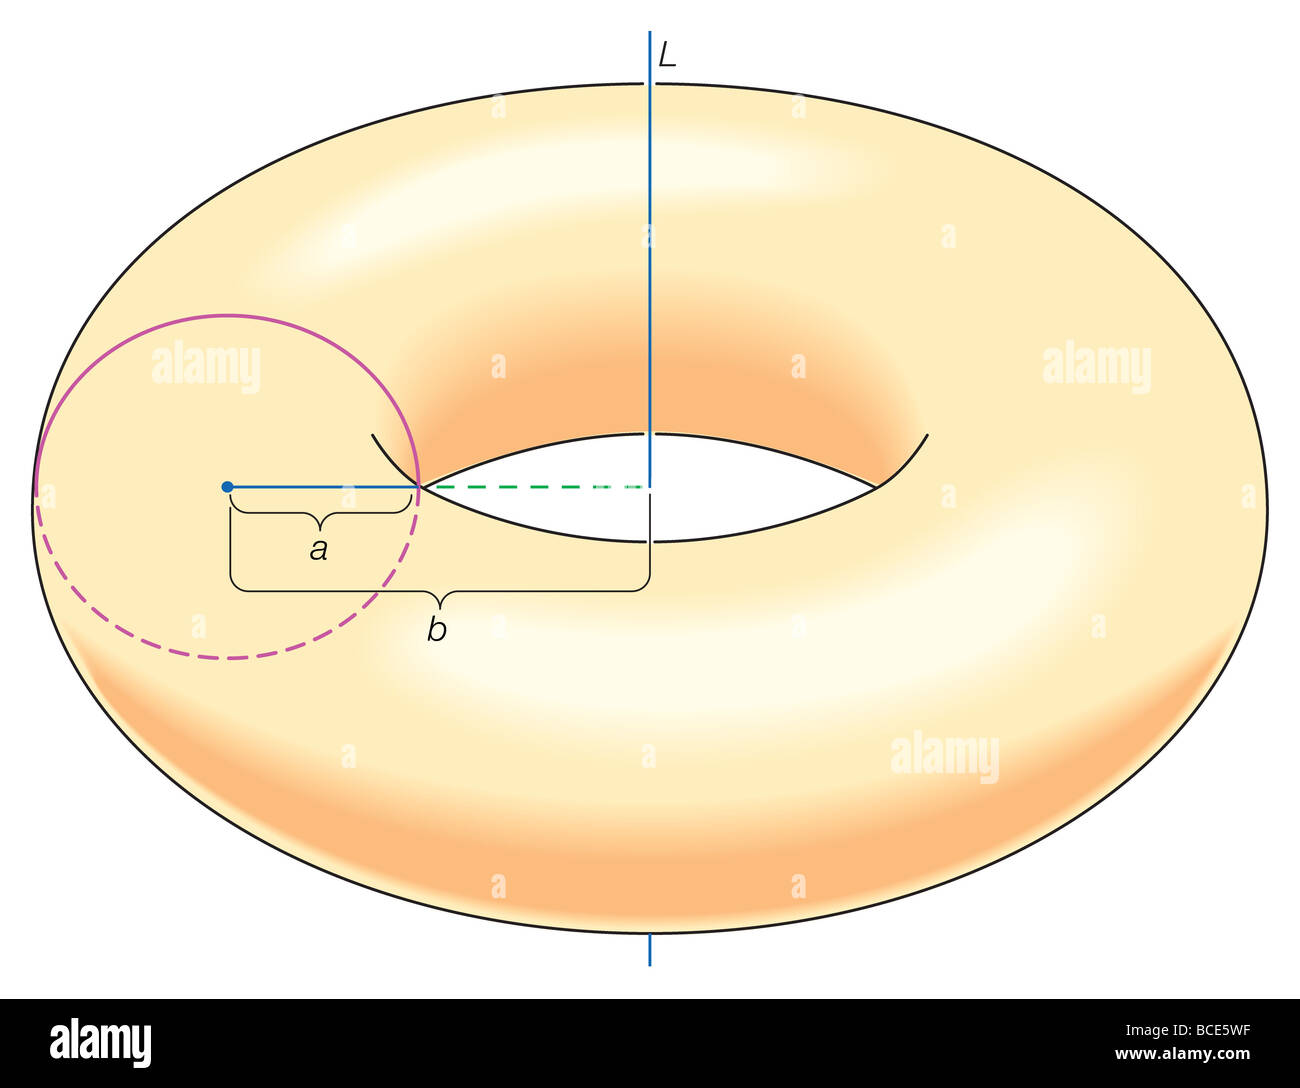 Le théorème de Pappus prouvé la formule pour le volume du tore solide obtenu en faisant tourner le disque d'un rayon autour de la ligne L. Banque D'Images